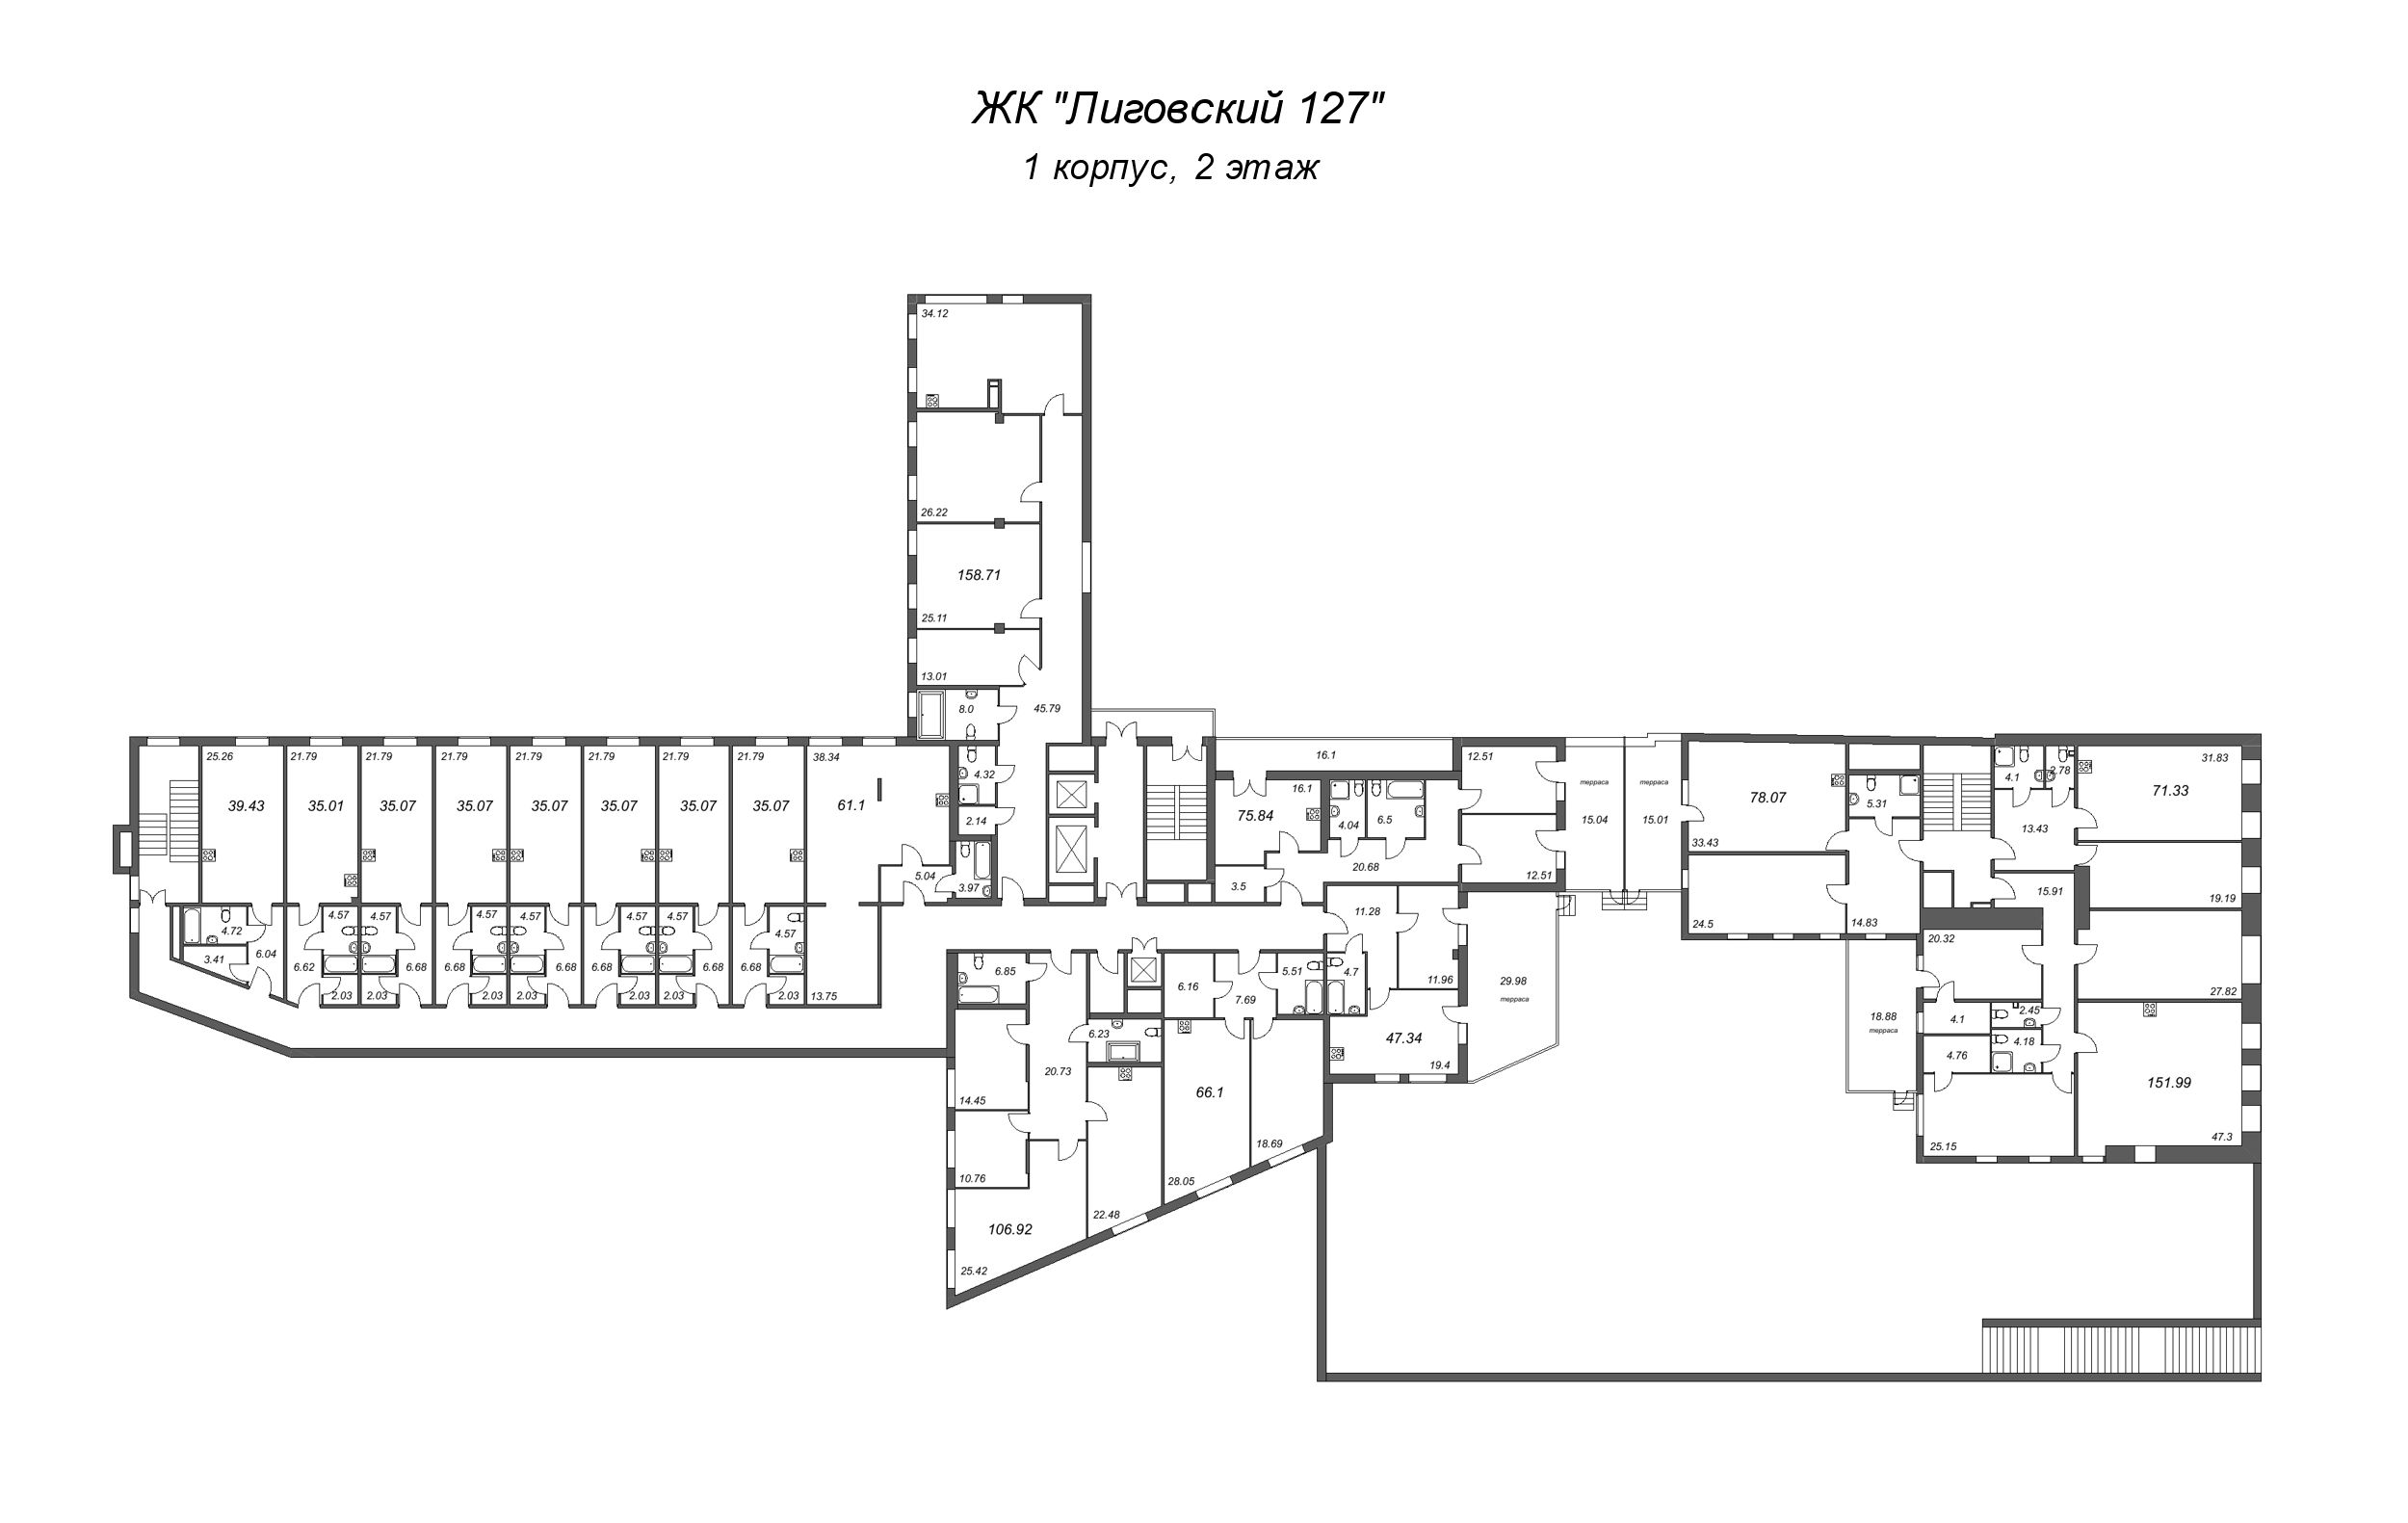 Квартира-студия, 35.07 м² в ЖК "Лиговский 127" - планировка этажа